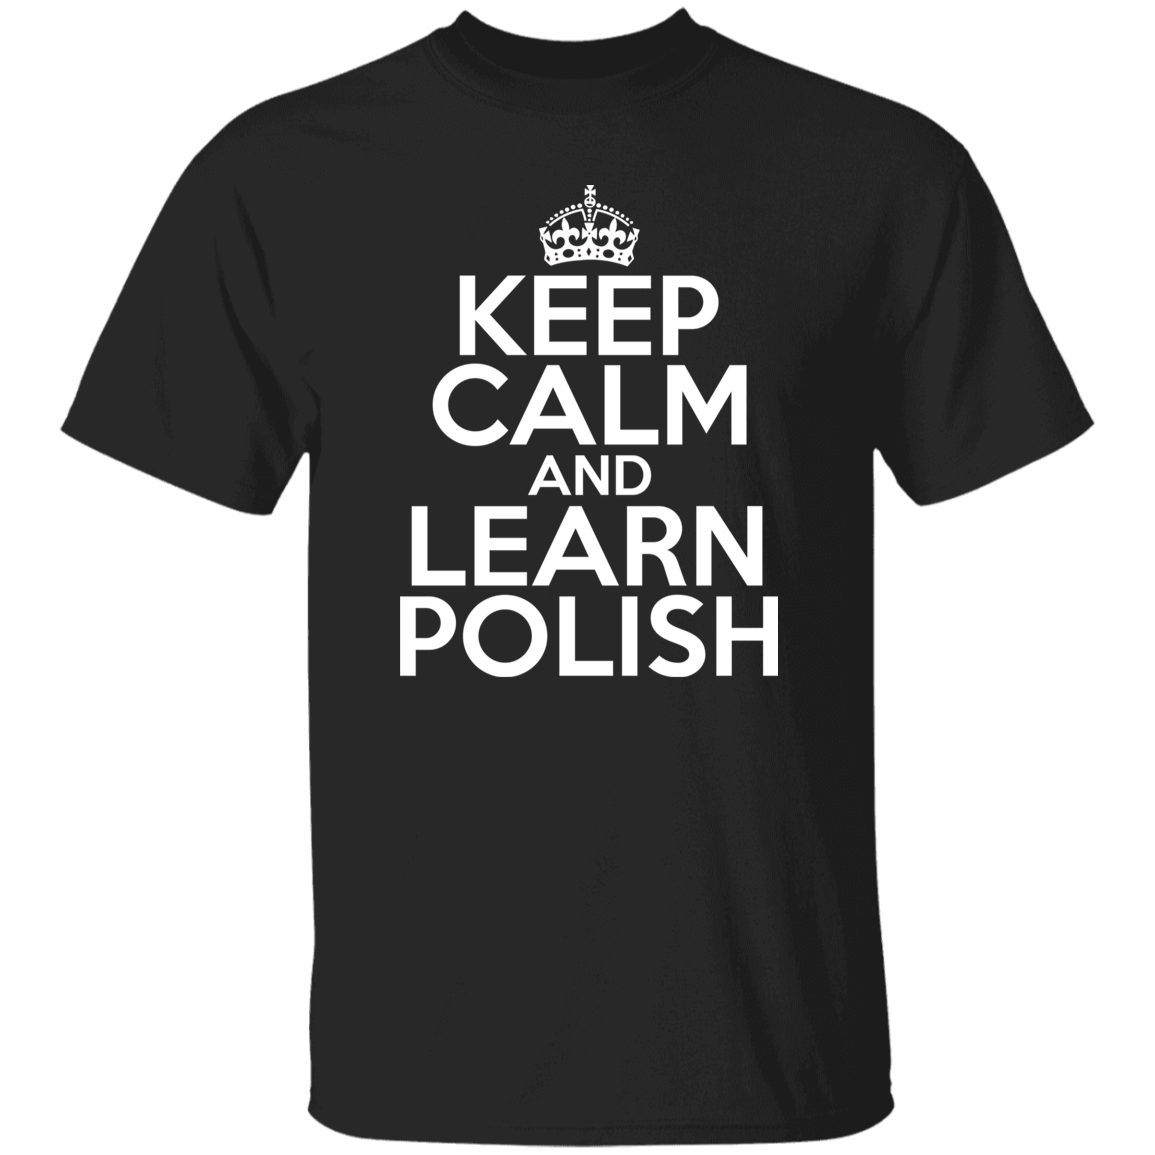 Keep Calm And Learn Polish Apparel CustomCat G500 5.3 oz. T-Shirt Black S